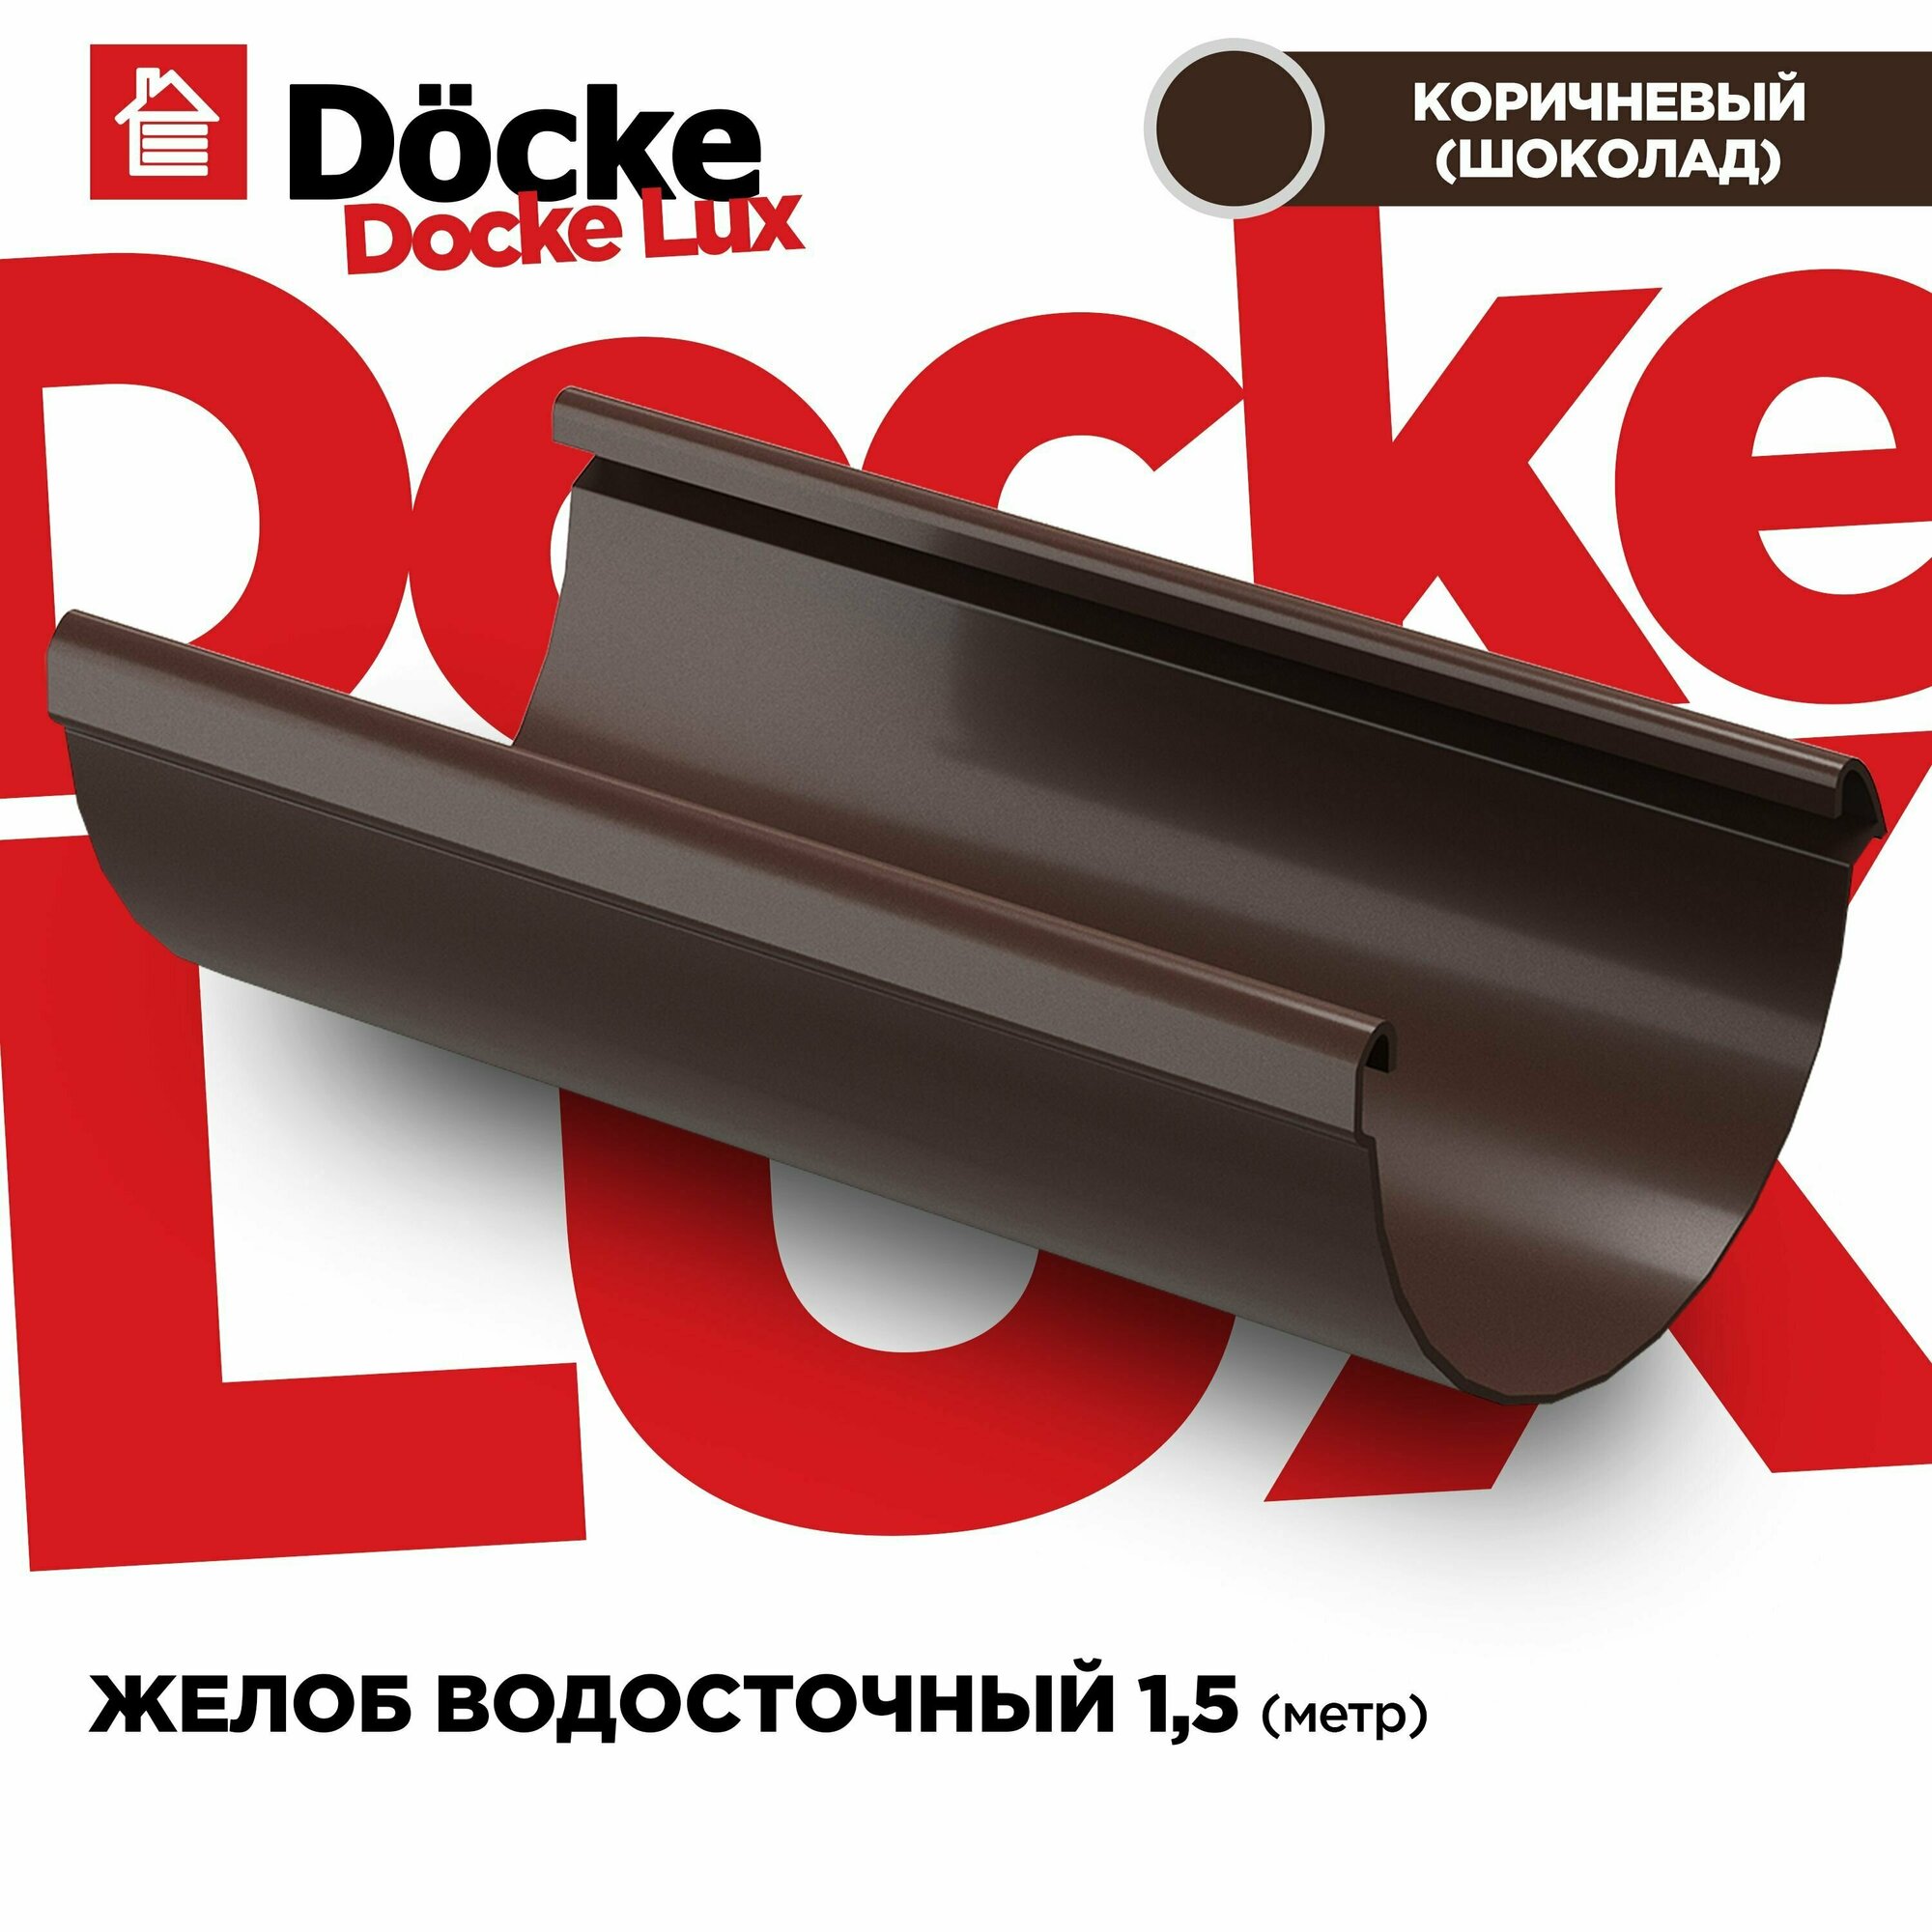 Желоб LUX водосточной системы docke, длина 1.5м, цвет Каштан (шоколад). 1 штука